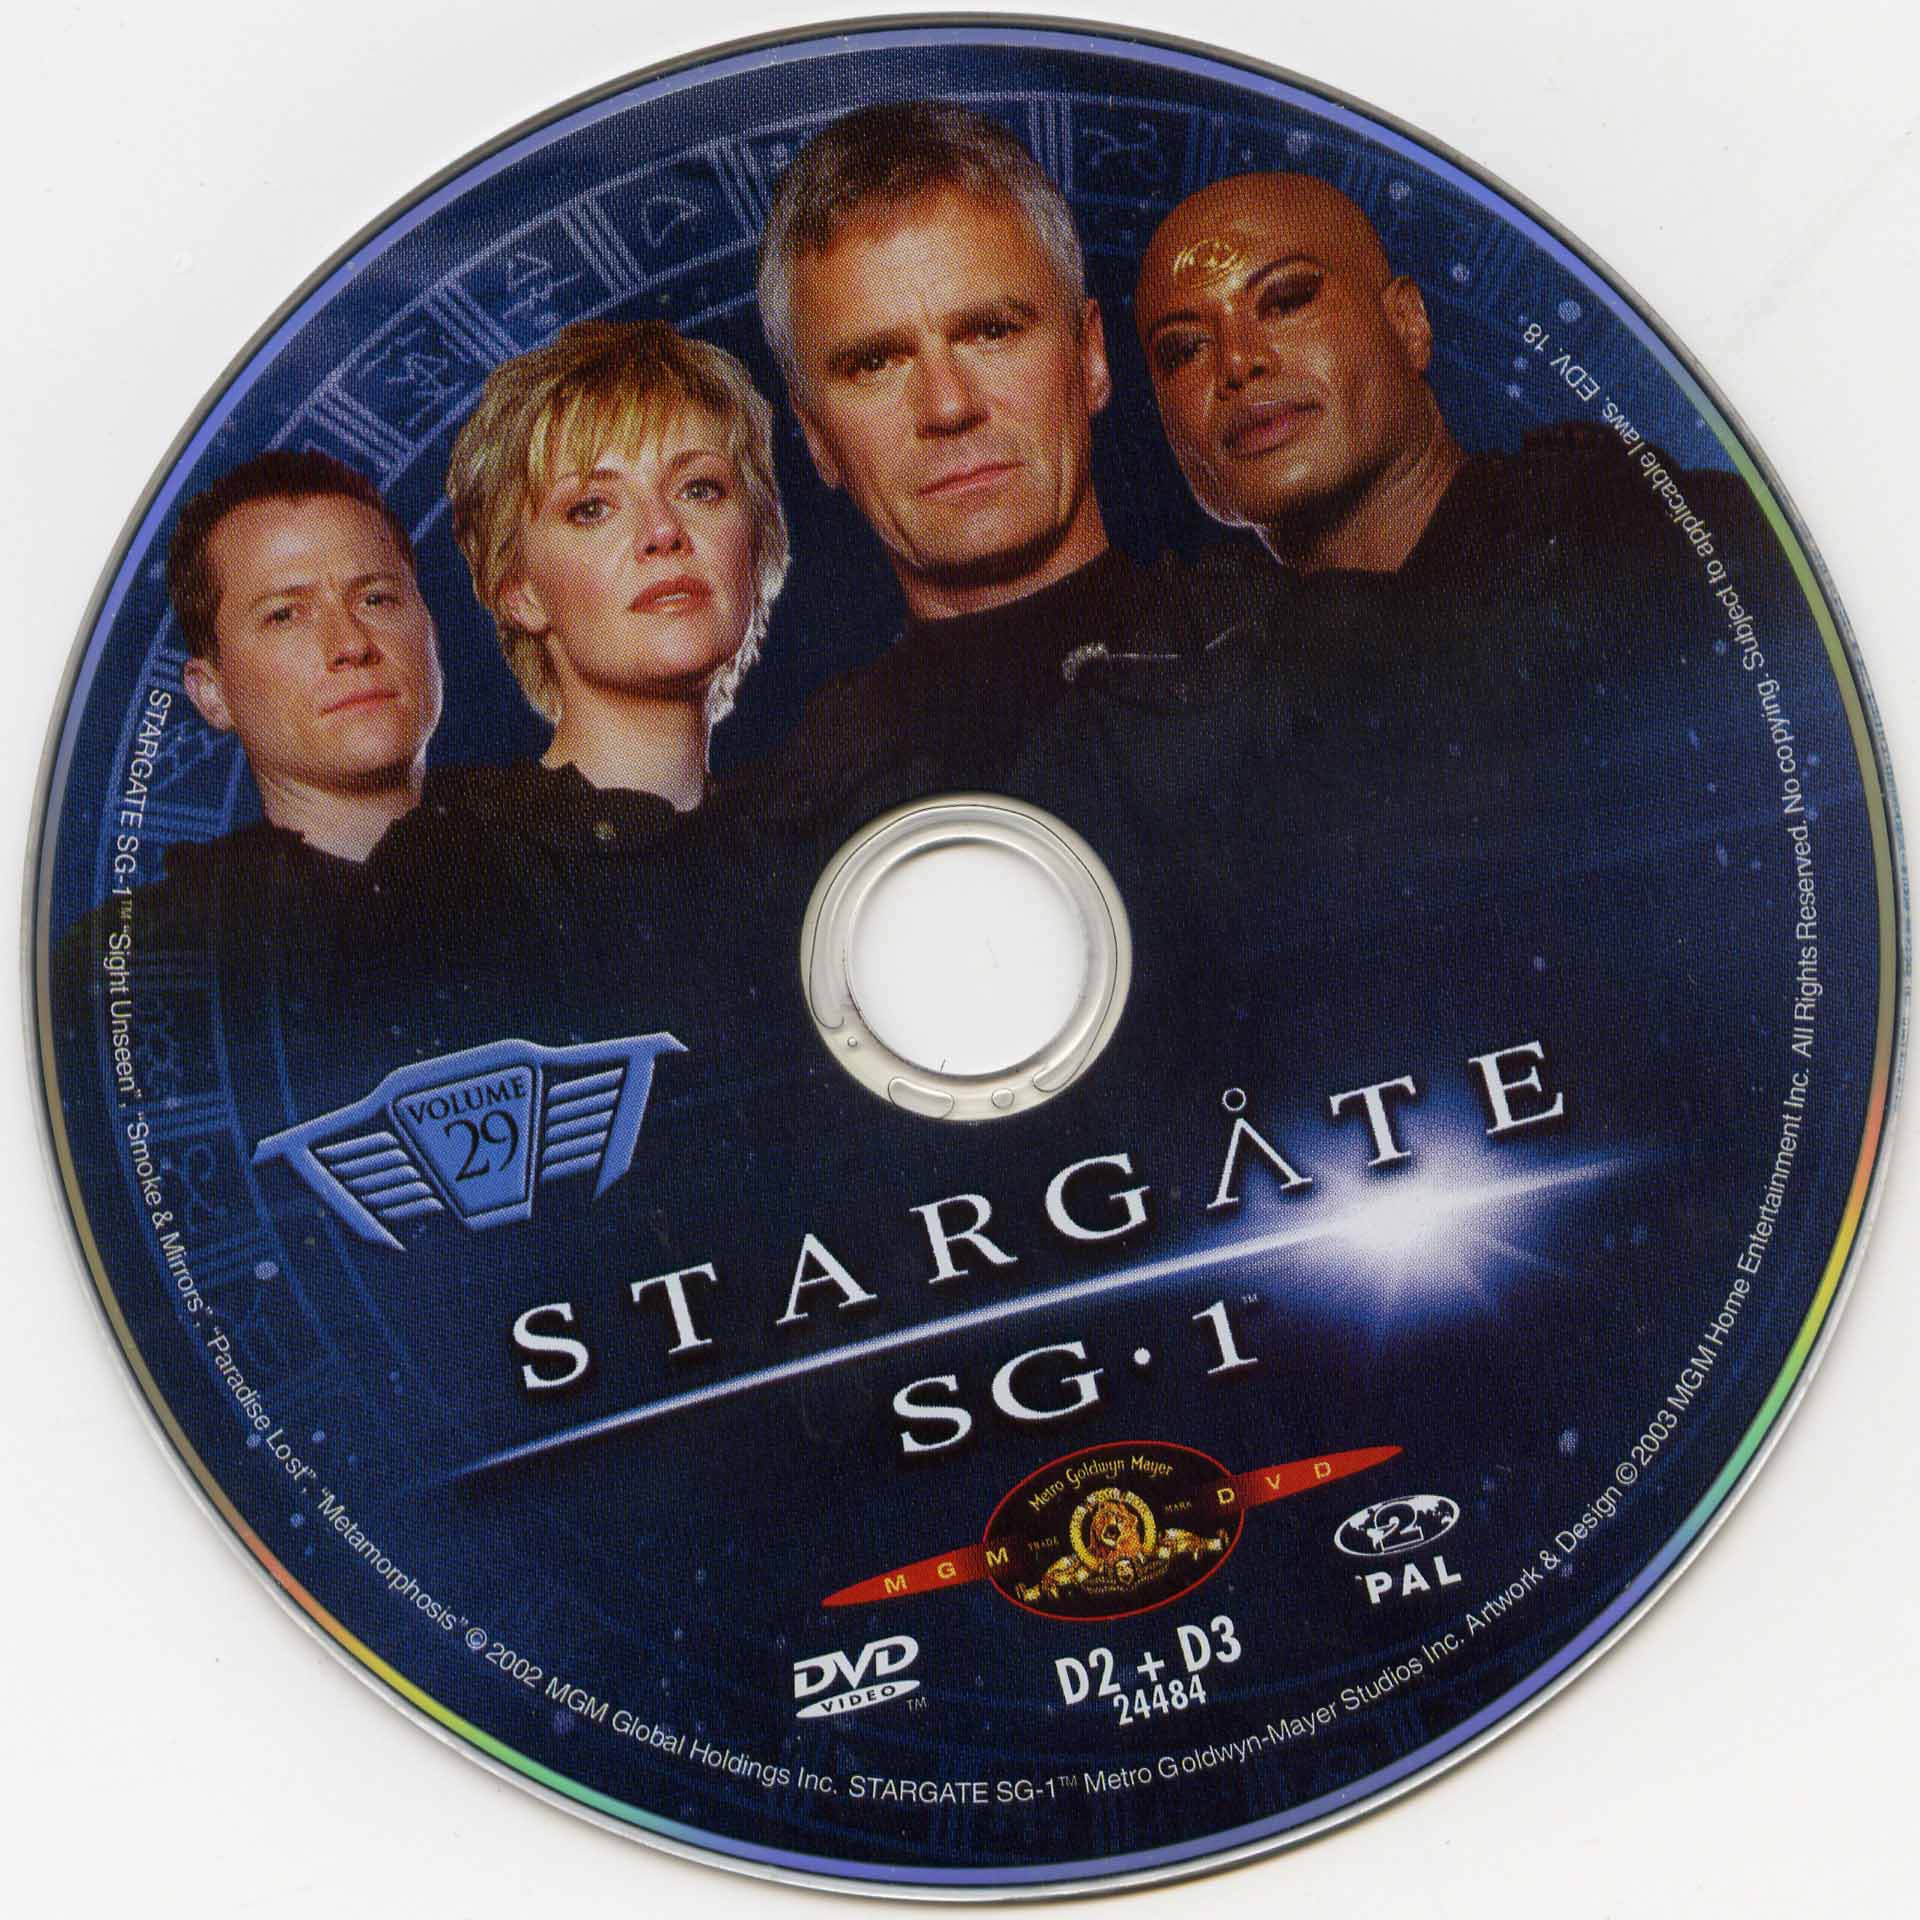 Stargate SG1 vol 29